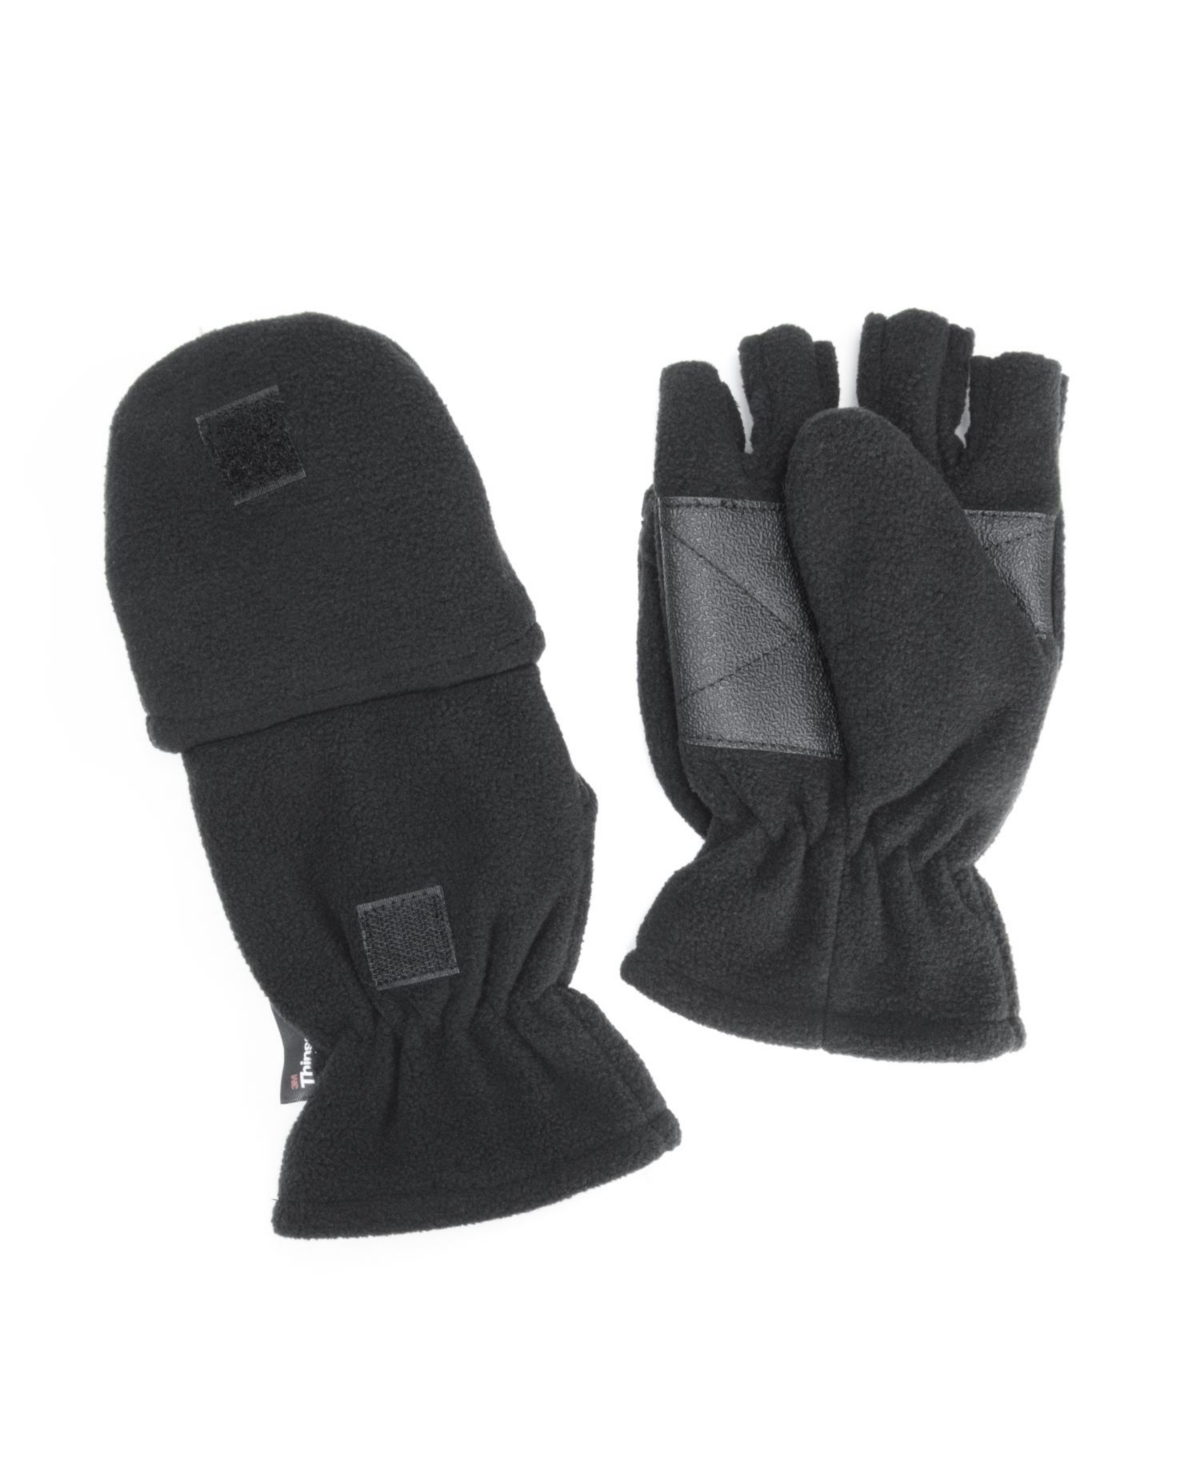 Men's Waterproof Fleece Flip Mittens, Black, XLarge - Black